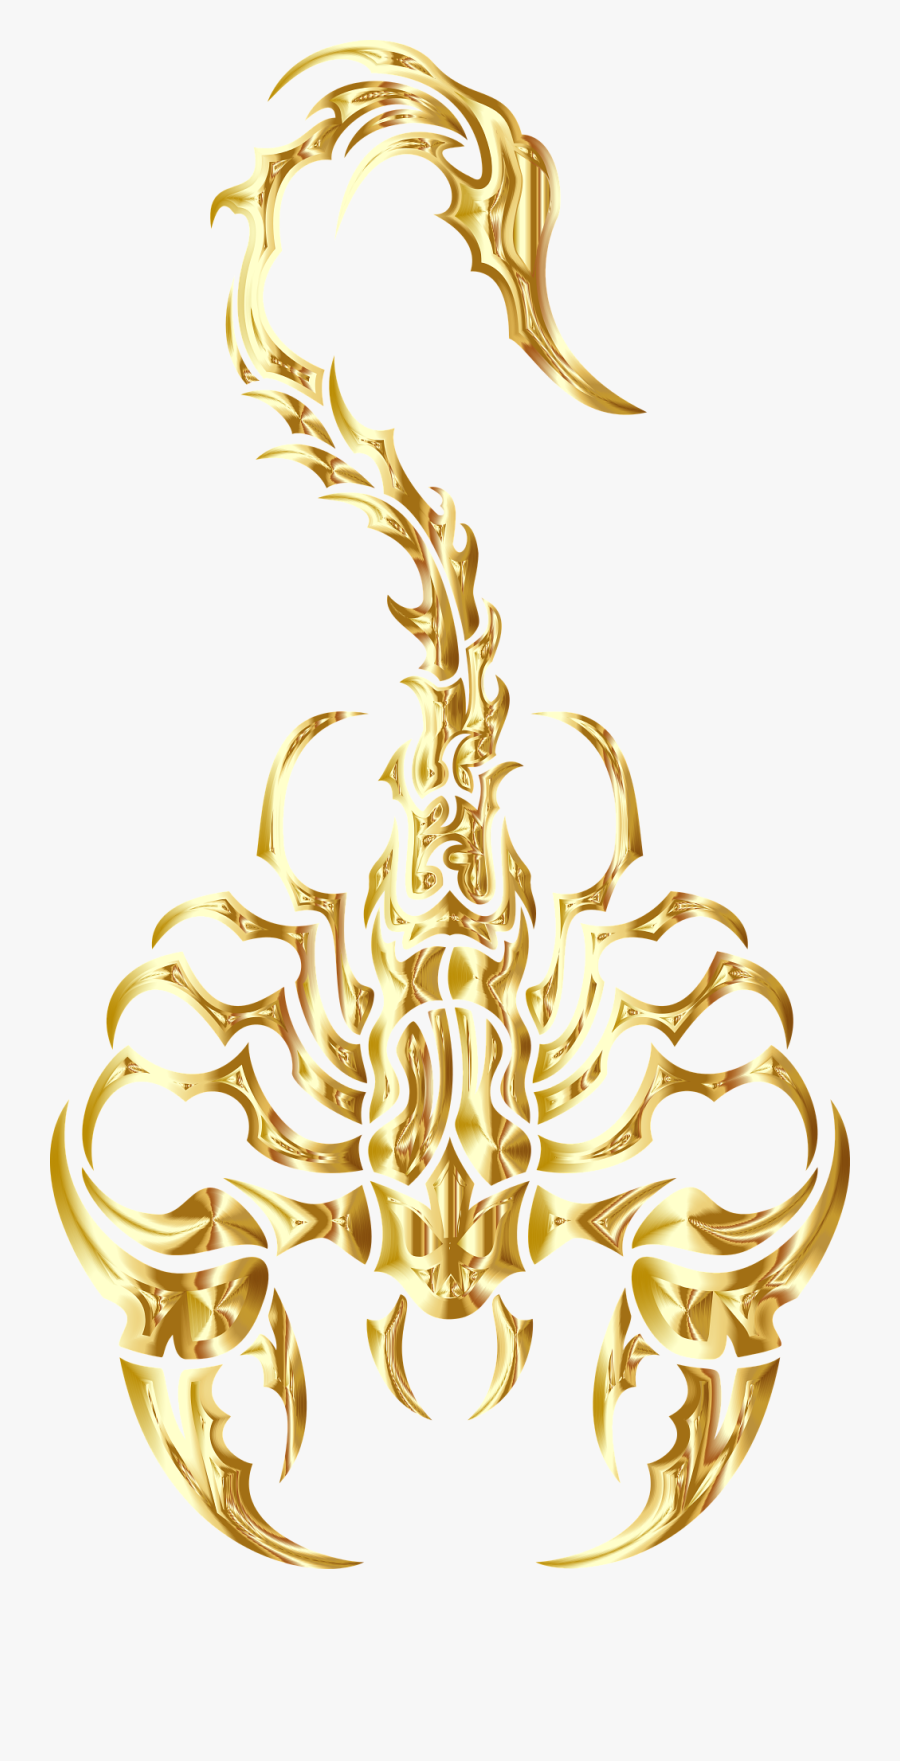 Transparent Scorpion Clipart - Scorpion Gold, Transparent Clipart